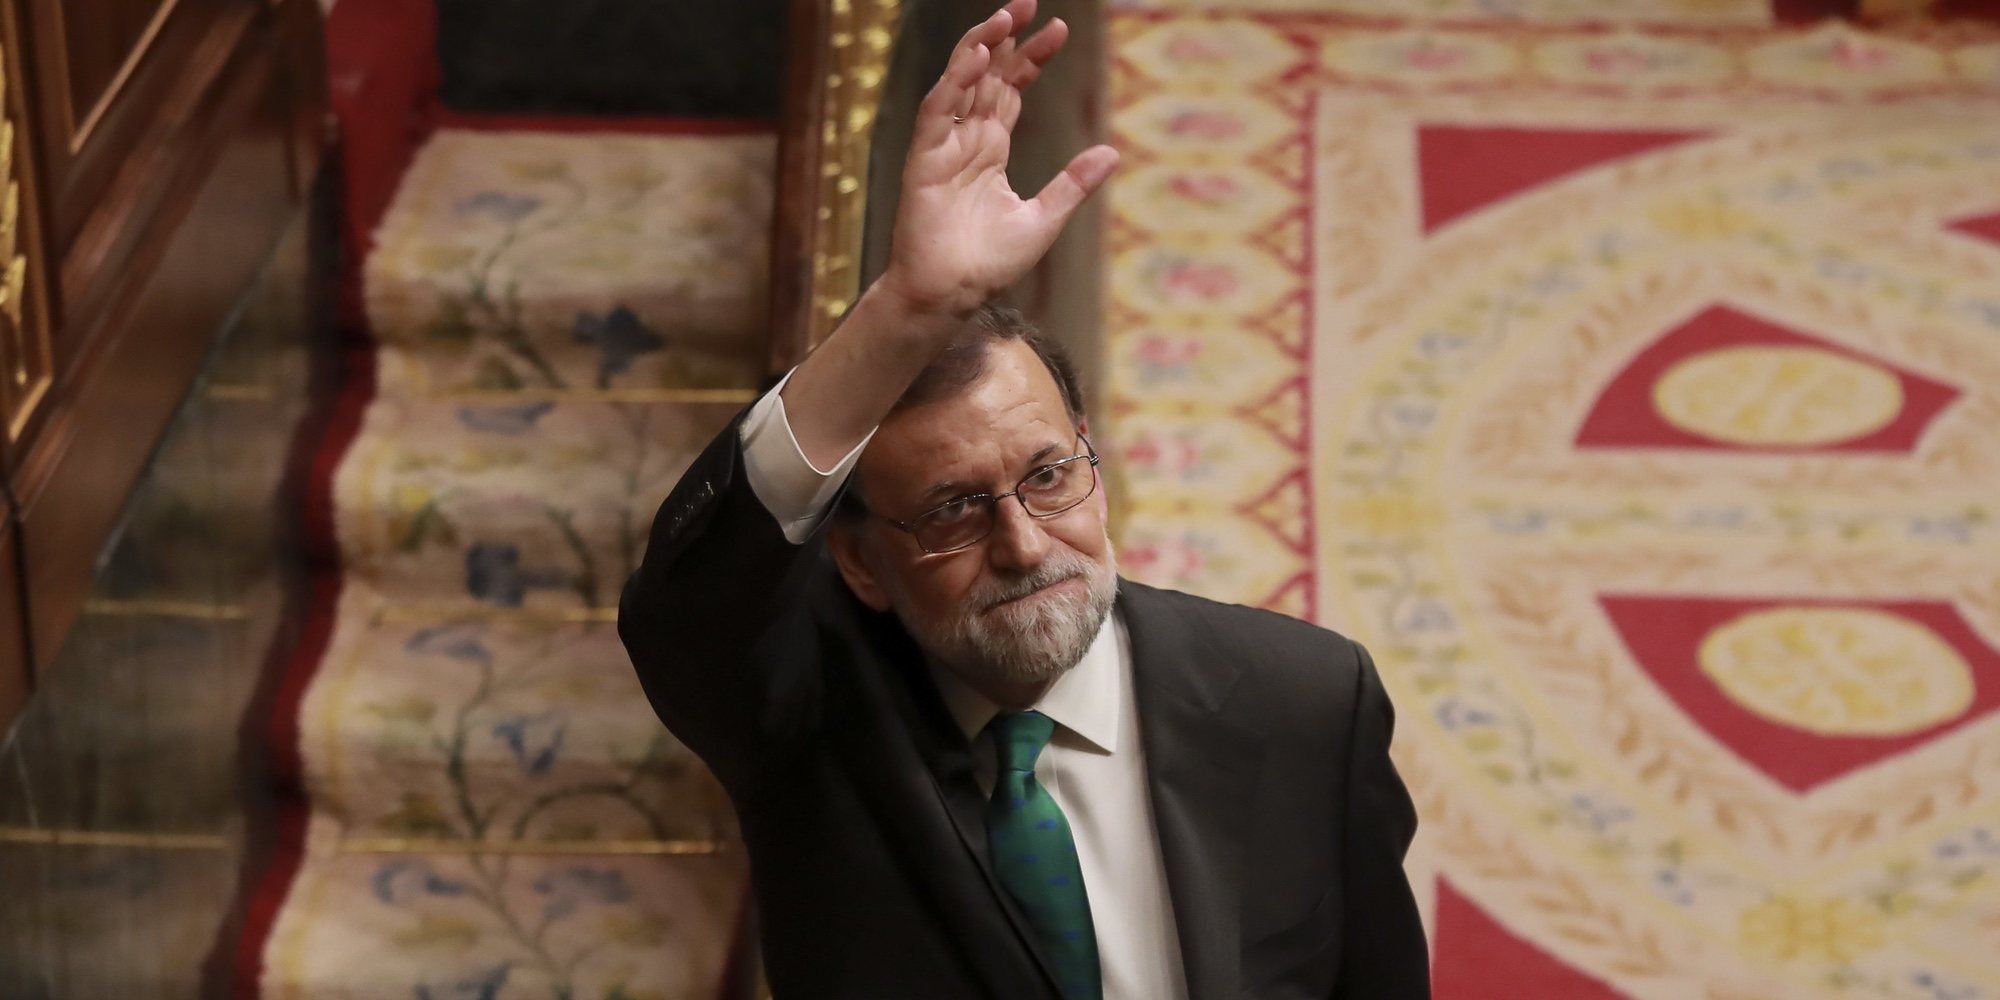 Un supuesto Mariano Rajoy, pillado en la playa de Santa Pola